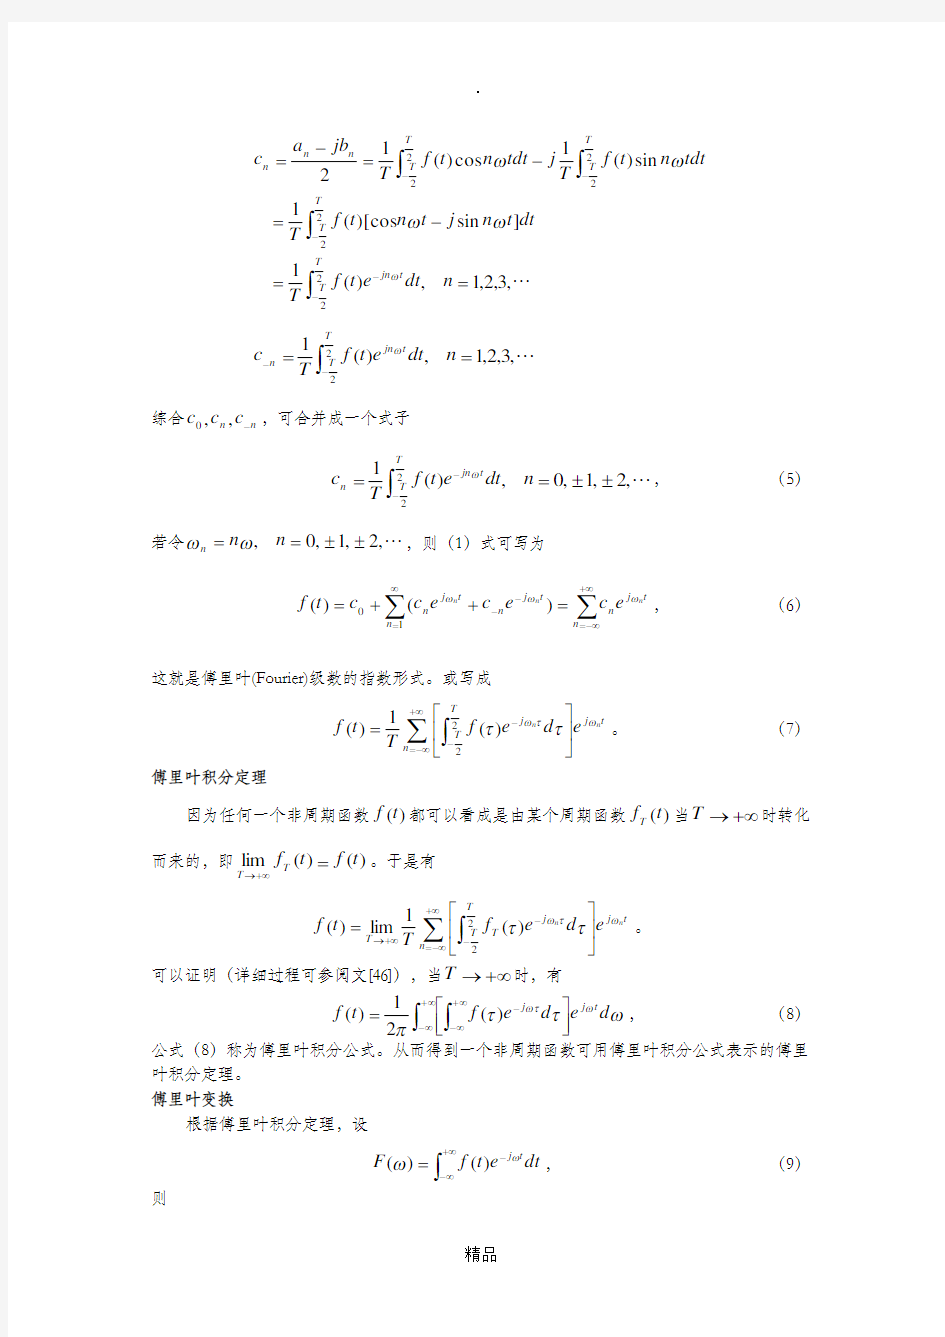 傅里叶(Fourier)级数的指数形式与傅里叶变换